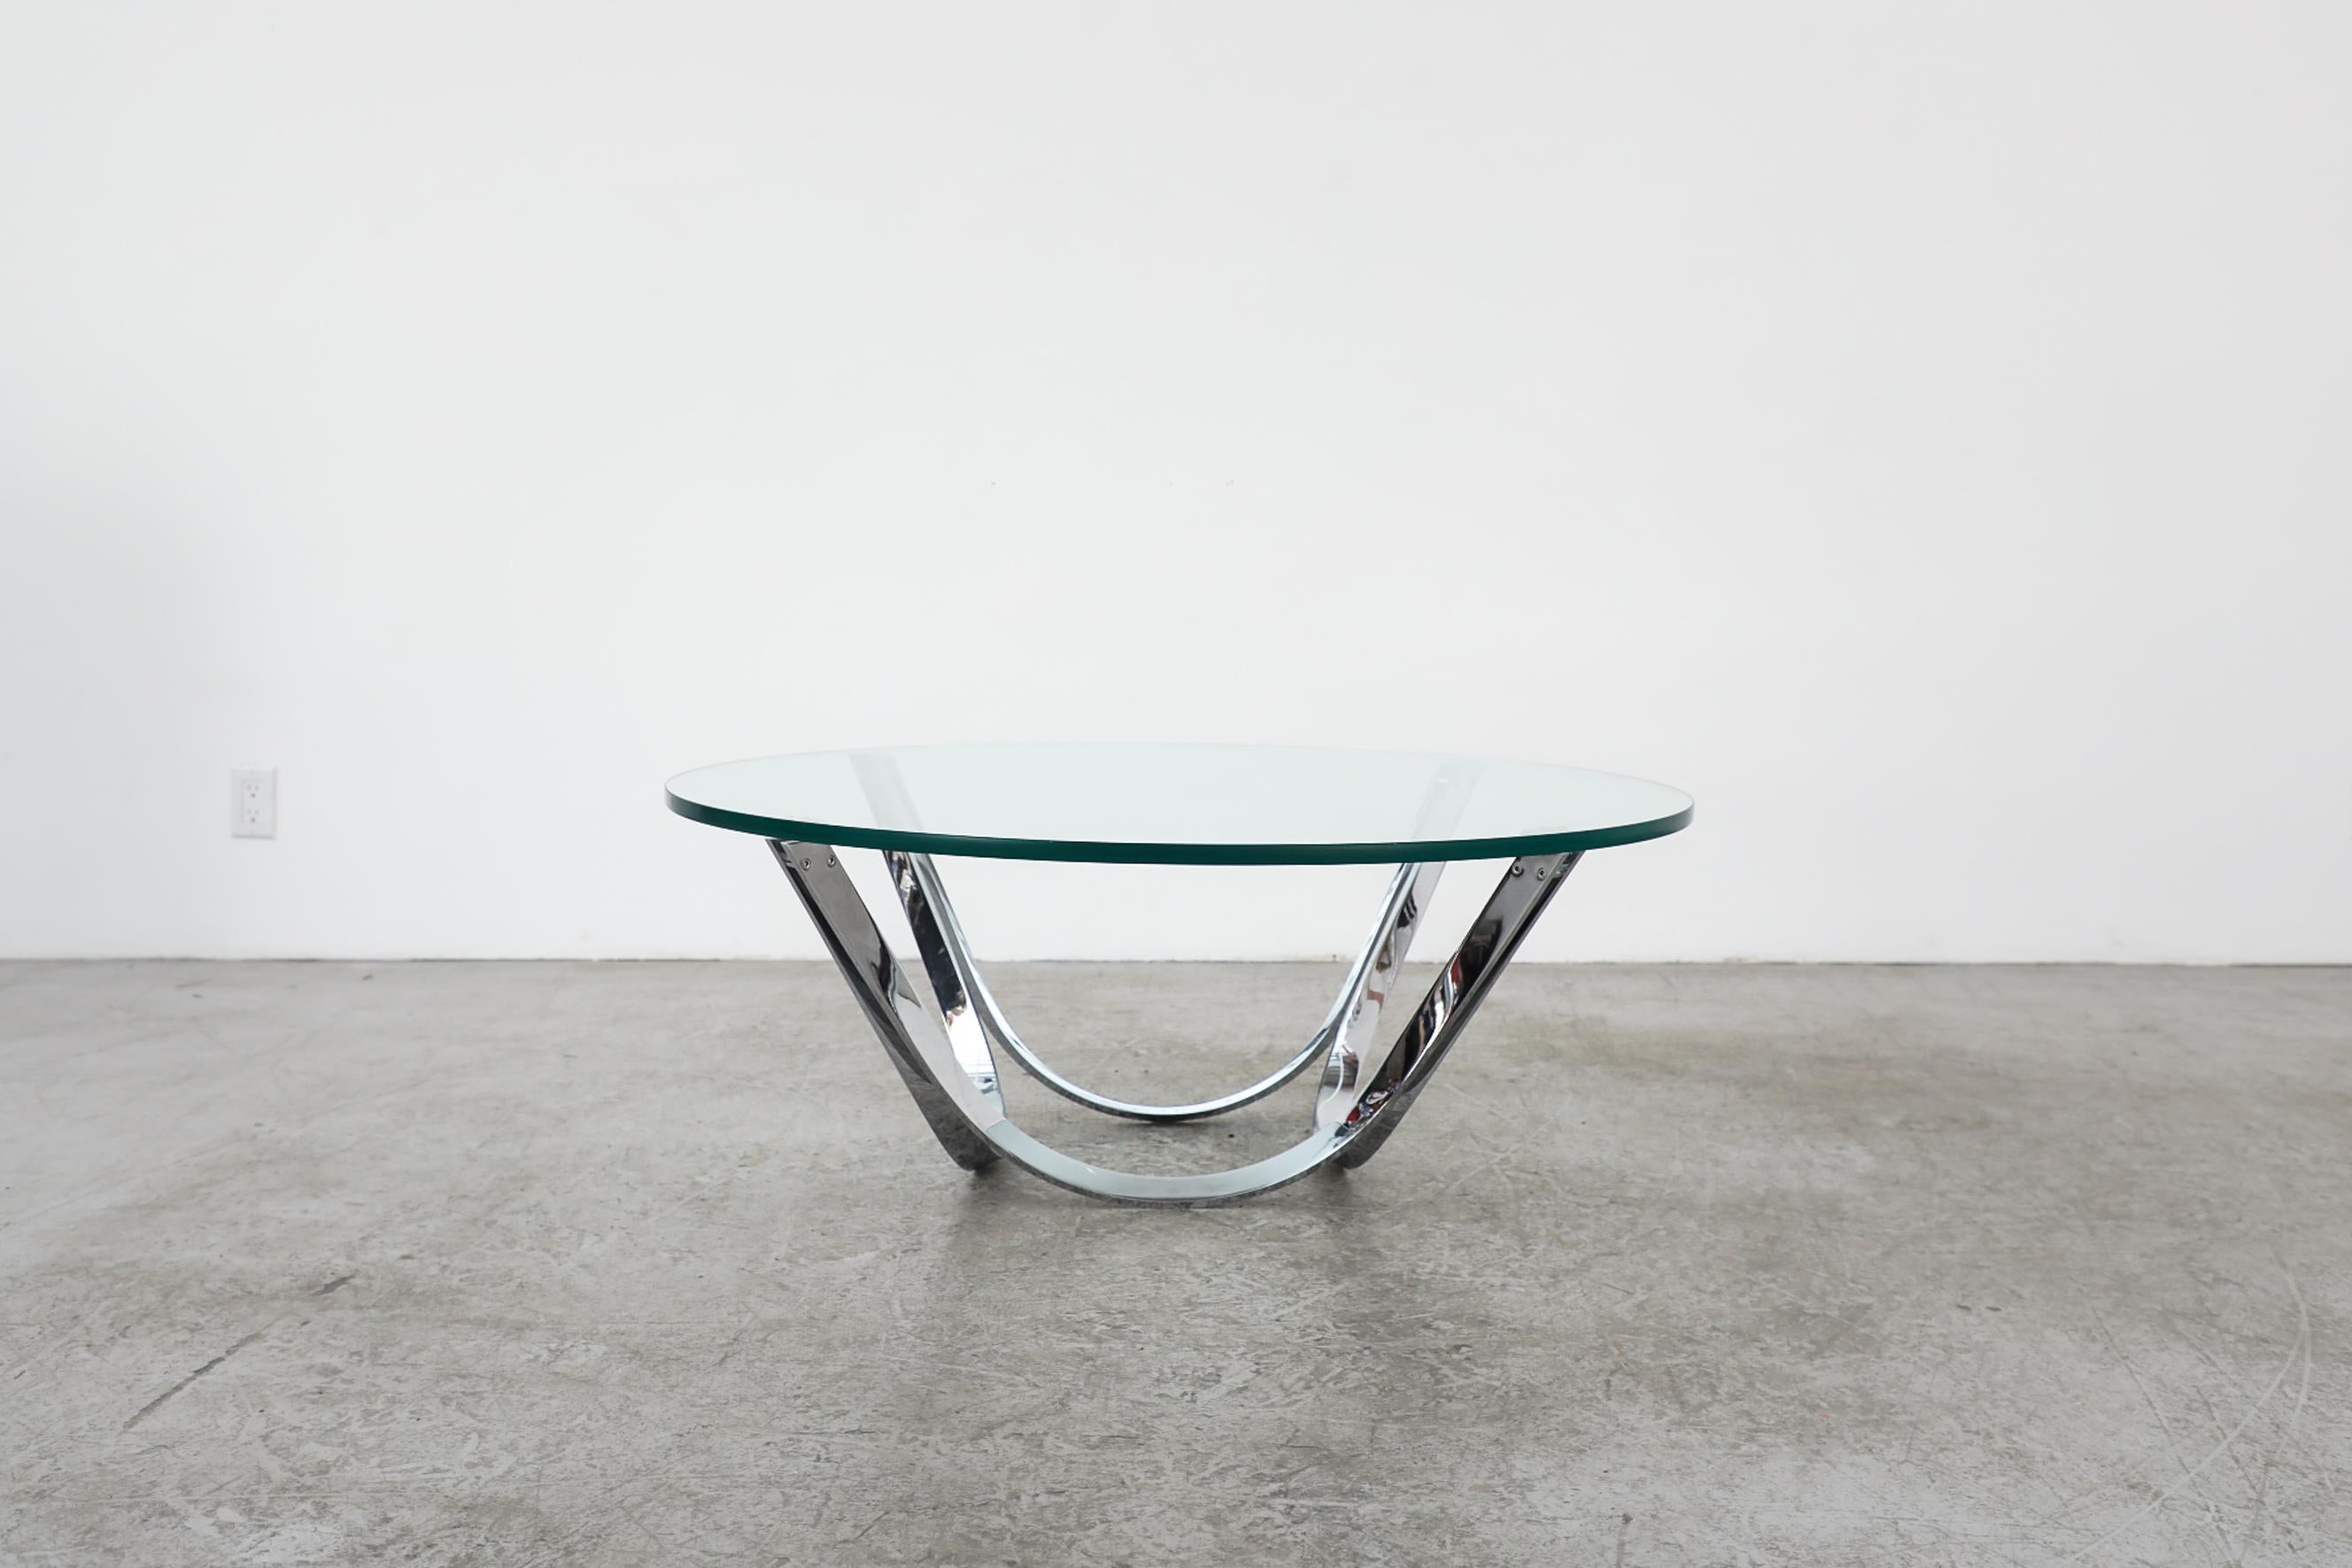 Cette table basse Mod 1970 est dotée d'un cadre chromé lourd, de pieds incurvés et d'un plateau en verre épais. Il est en état d'origine avec une usure visible, y compris quelques rayures et éclats sur le verre. L'usure est conforme à son âge et à